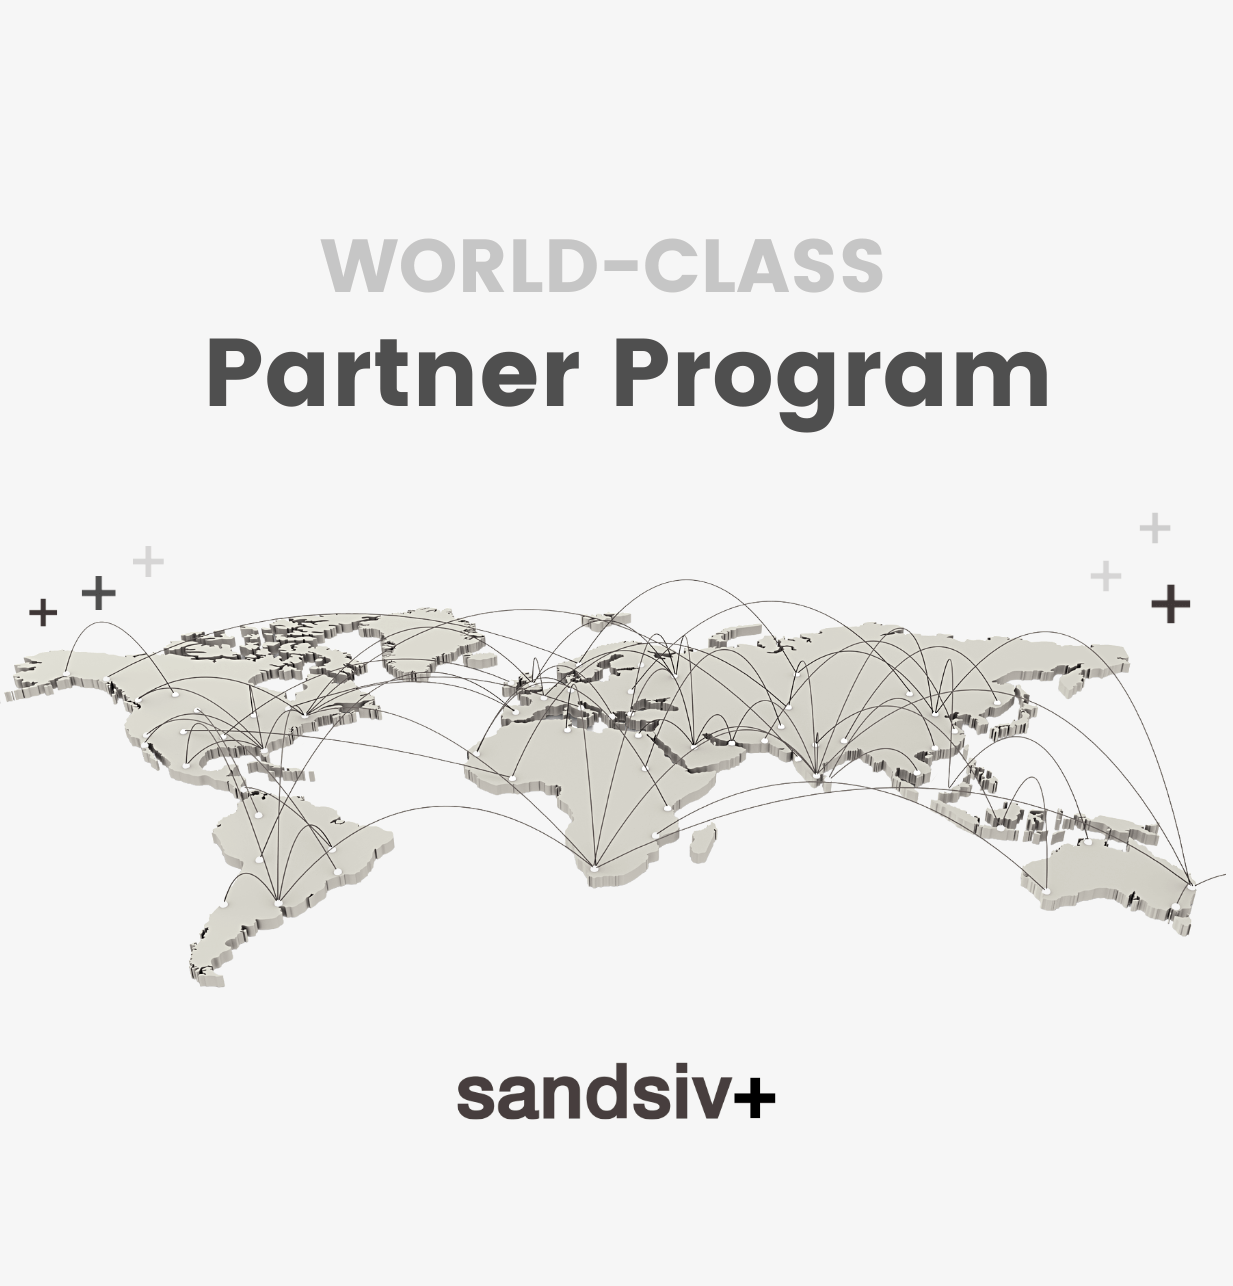 SANDSIV espande con successo il suo Partner Program in tutto il mondo